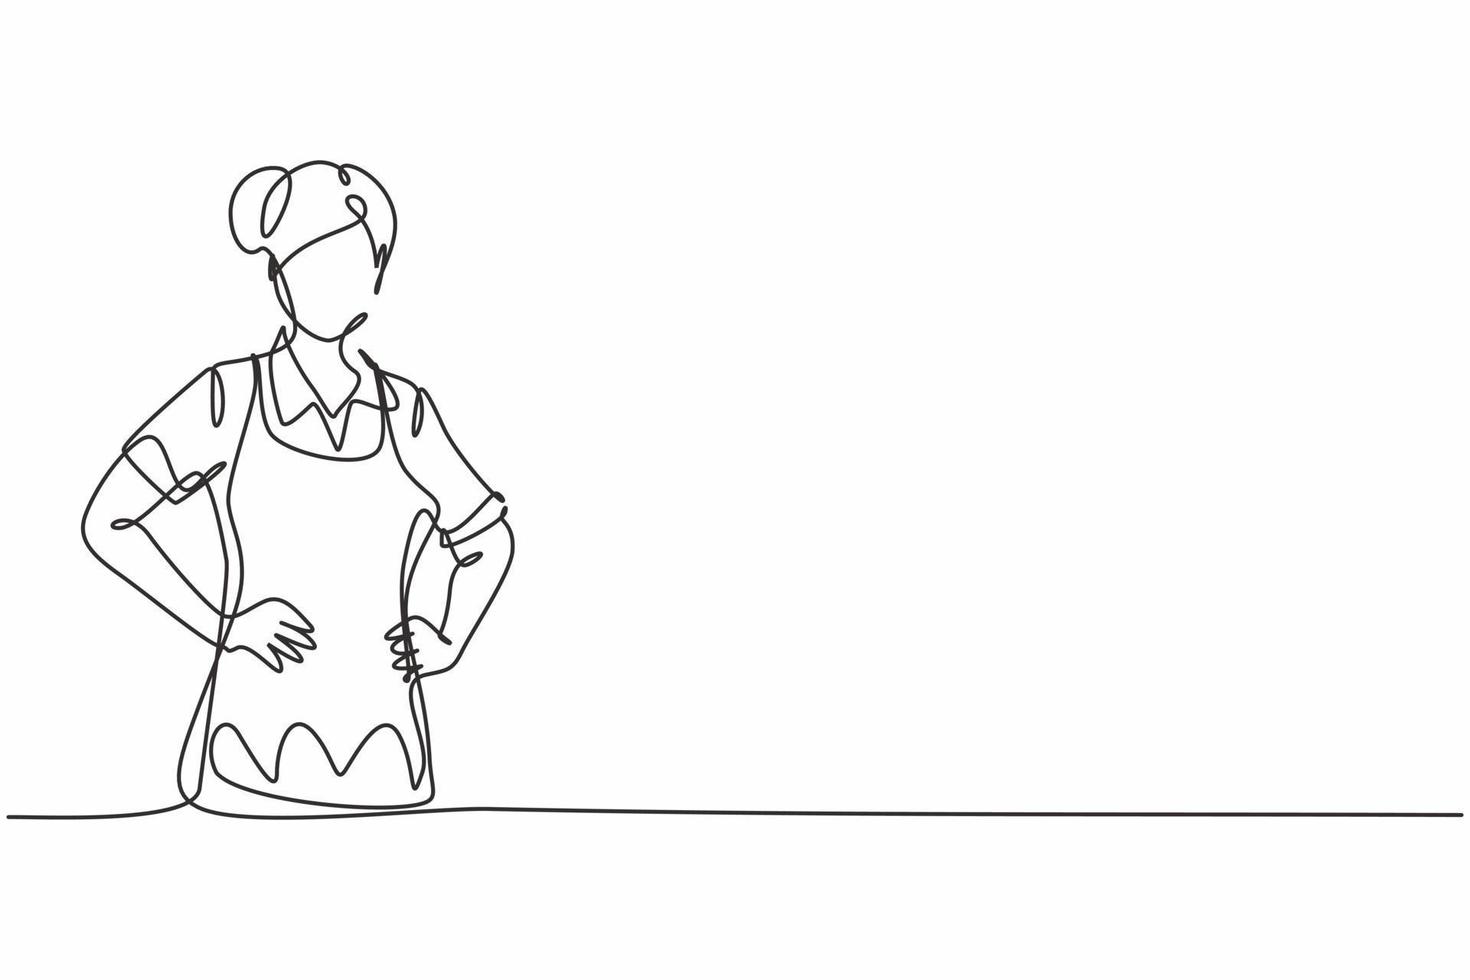 único desenho de linha de uma jovem empregada doméstica de beleza feminina posando com as mãos no quadril. profissão de trabalho profissional e conceito mínimo de ocupação. ilustração em vetor gráfico desenho linha contínua